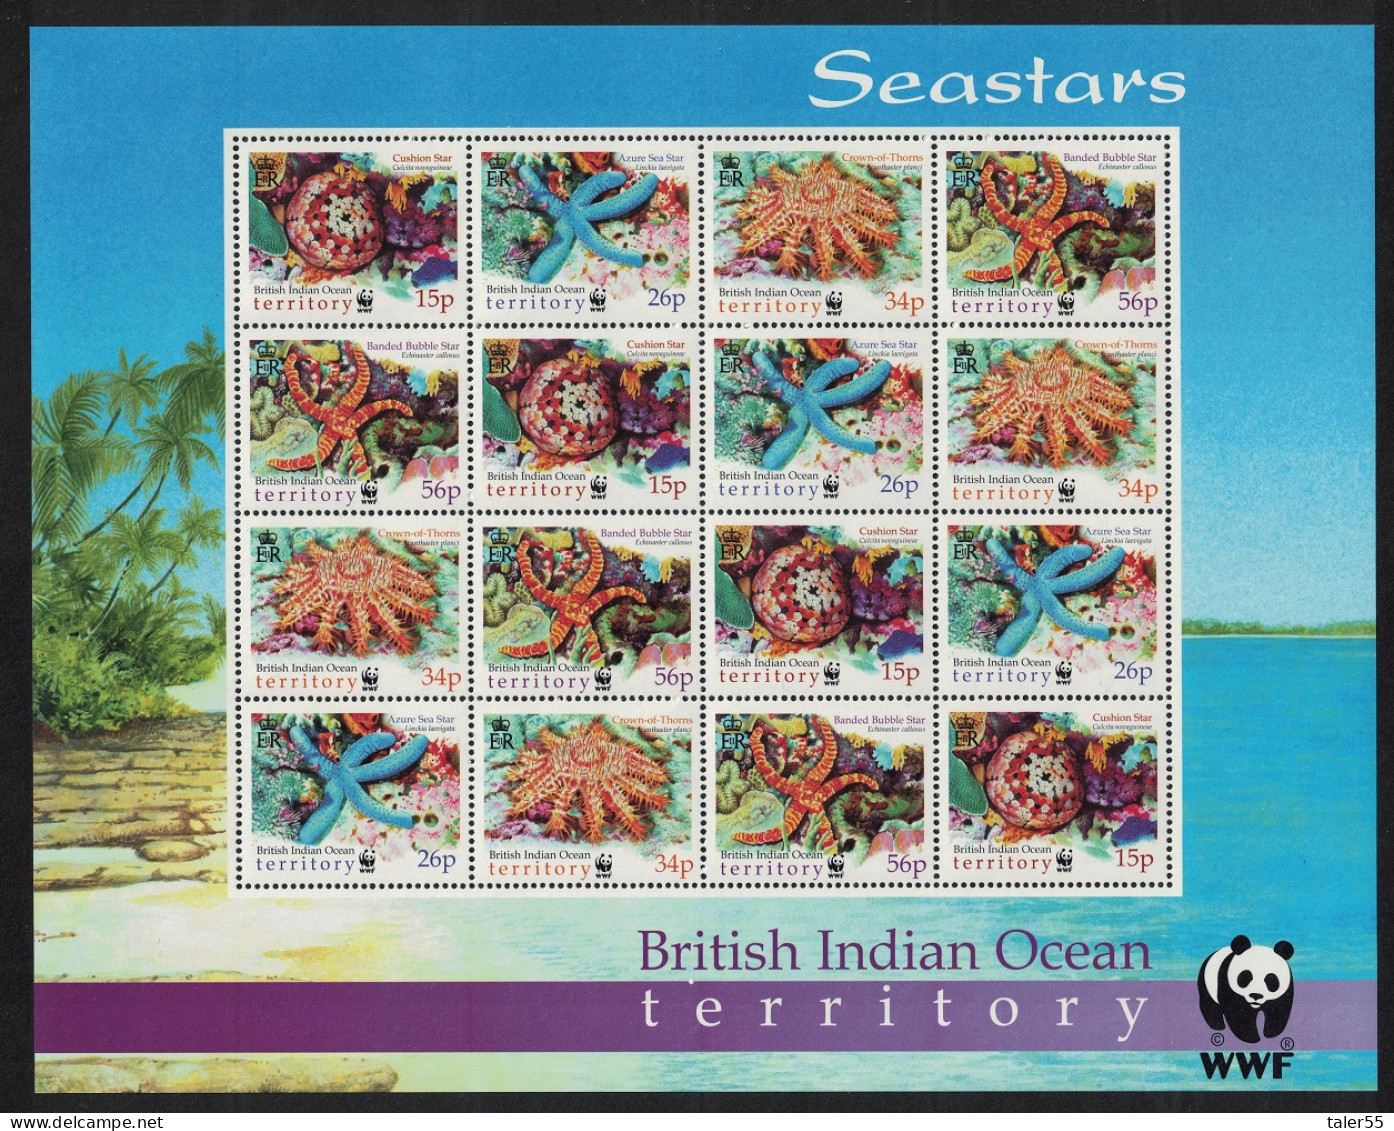 BIOT WWF Sea Stars Sheetlet Of 4 Sets 2001 MNH SG#253-256 MI#266-269 Sc#231-234 - Territorio Britannico Dell'Oceano Indiano